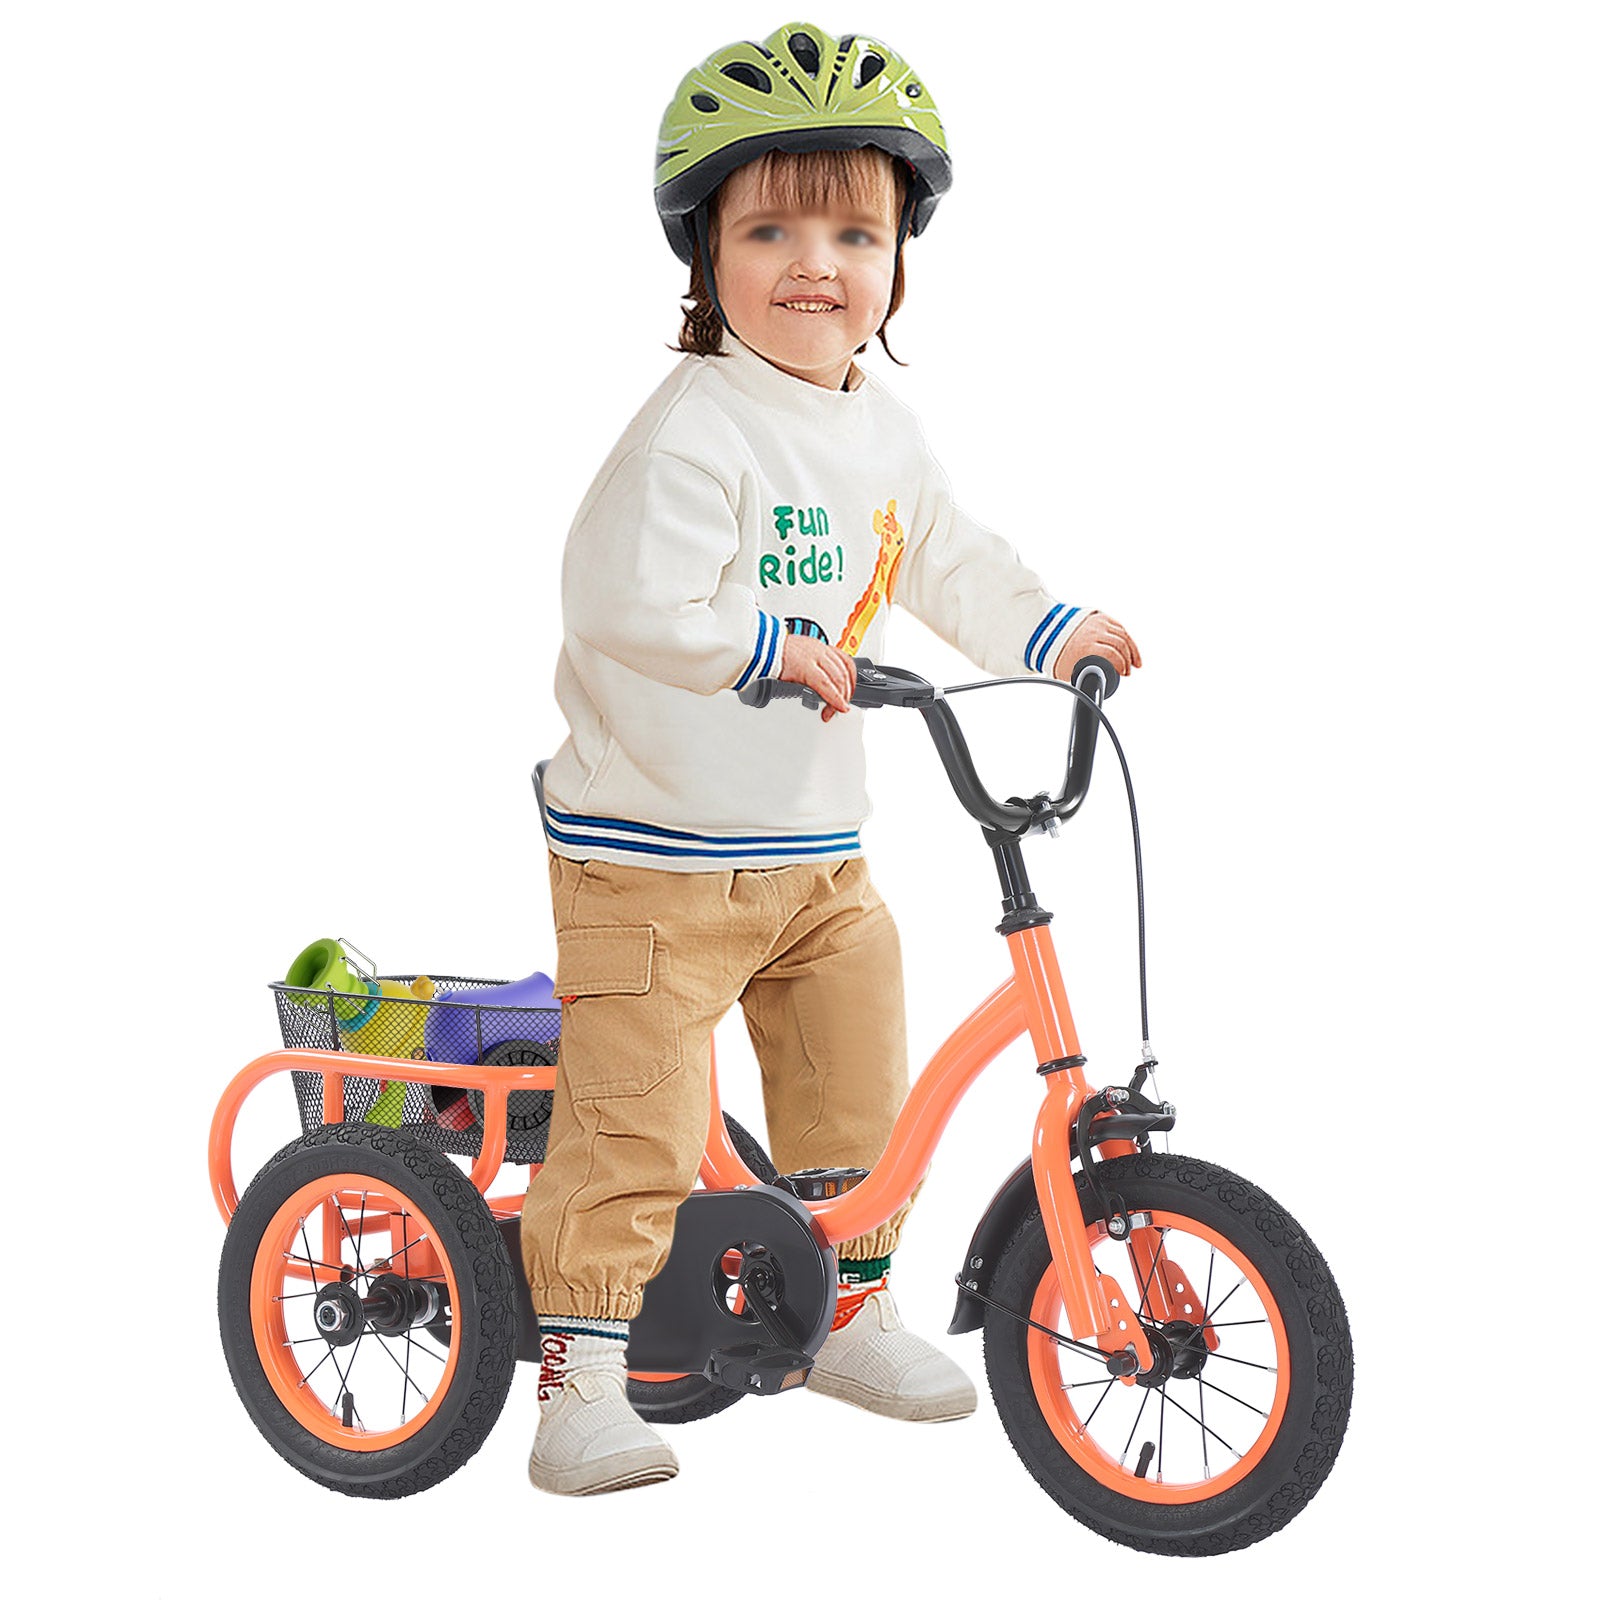 12 Pollici Bici 3 Ruote Bambini, Triciclo Bici Bambini Biciclette , per ragazzi, ragazze, 3 route, con cestino